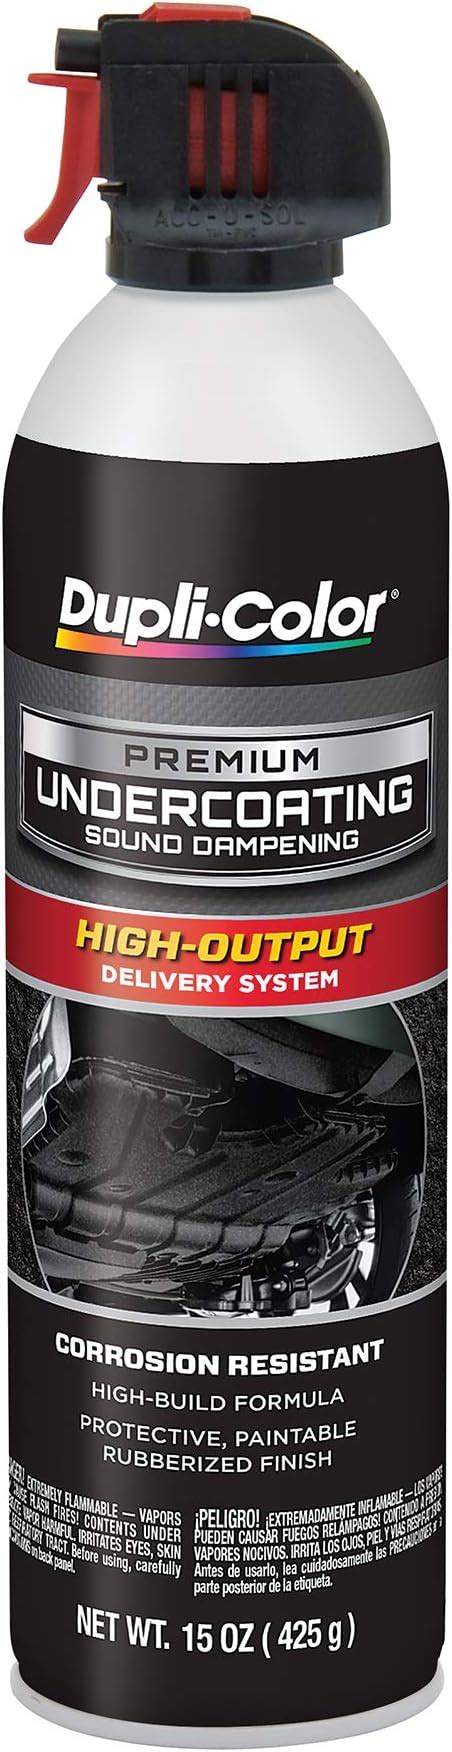 Dupli-Color Premium Undercoating logo